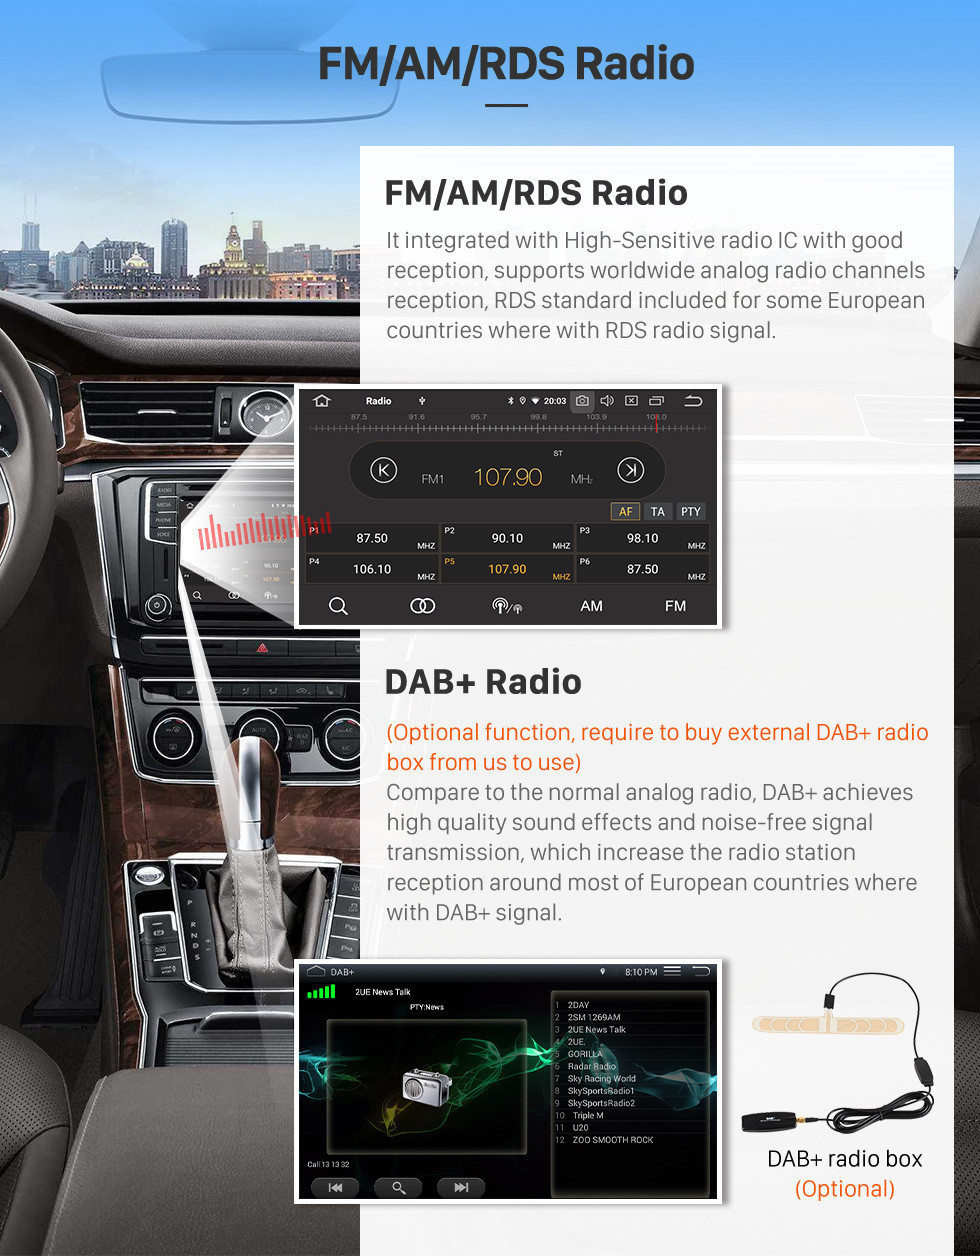 Seicane 10,1-дюймовый Android 13.0 Sat Nav в автомобильной GPS-системе 2009-2014 Toyota Highlander с 3G WiFi AM FM-радио Bluetooth Music Mirror Link OBD2 Резервная камера DVR